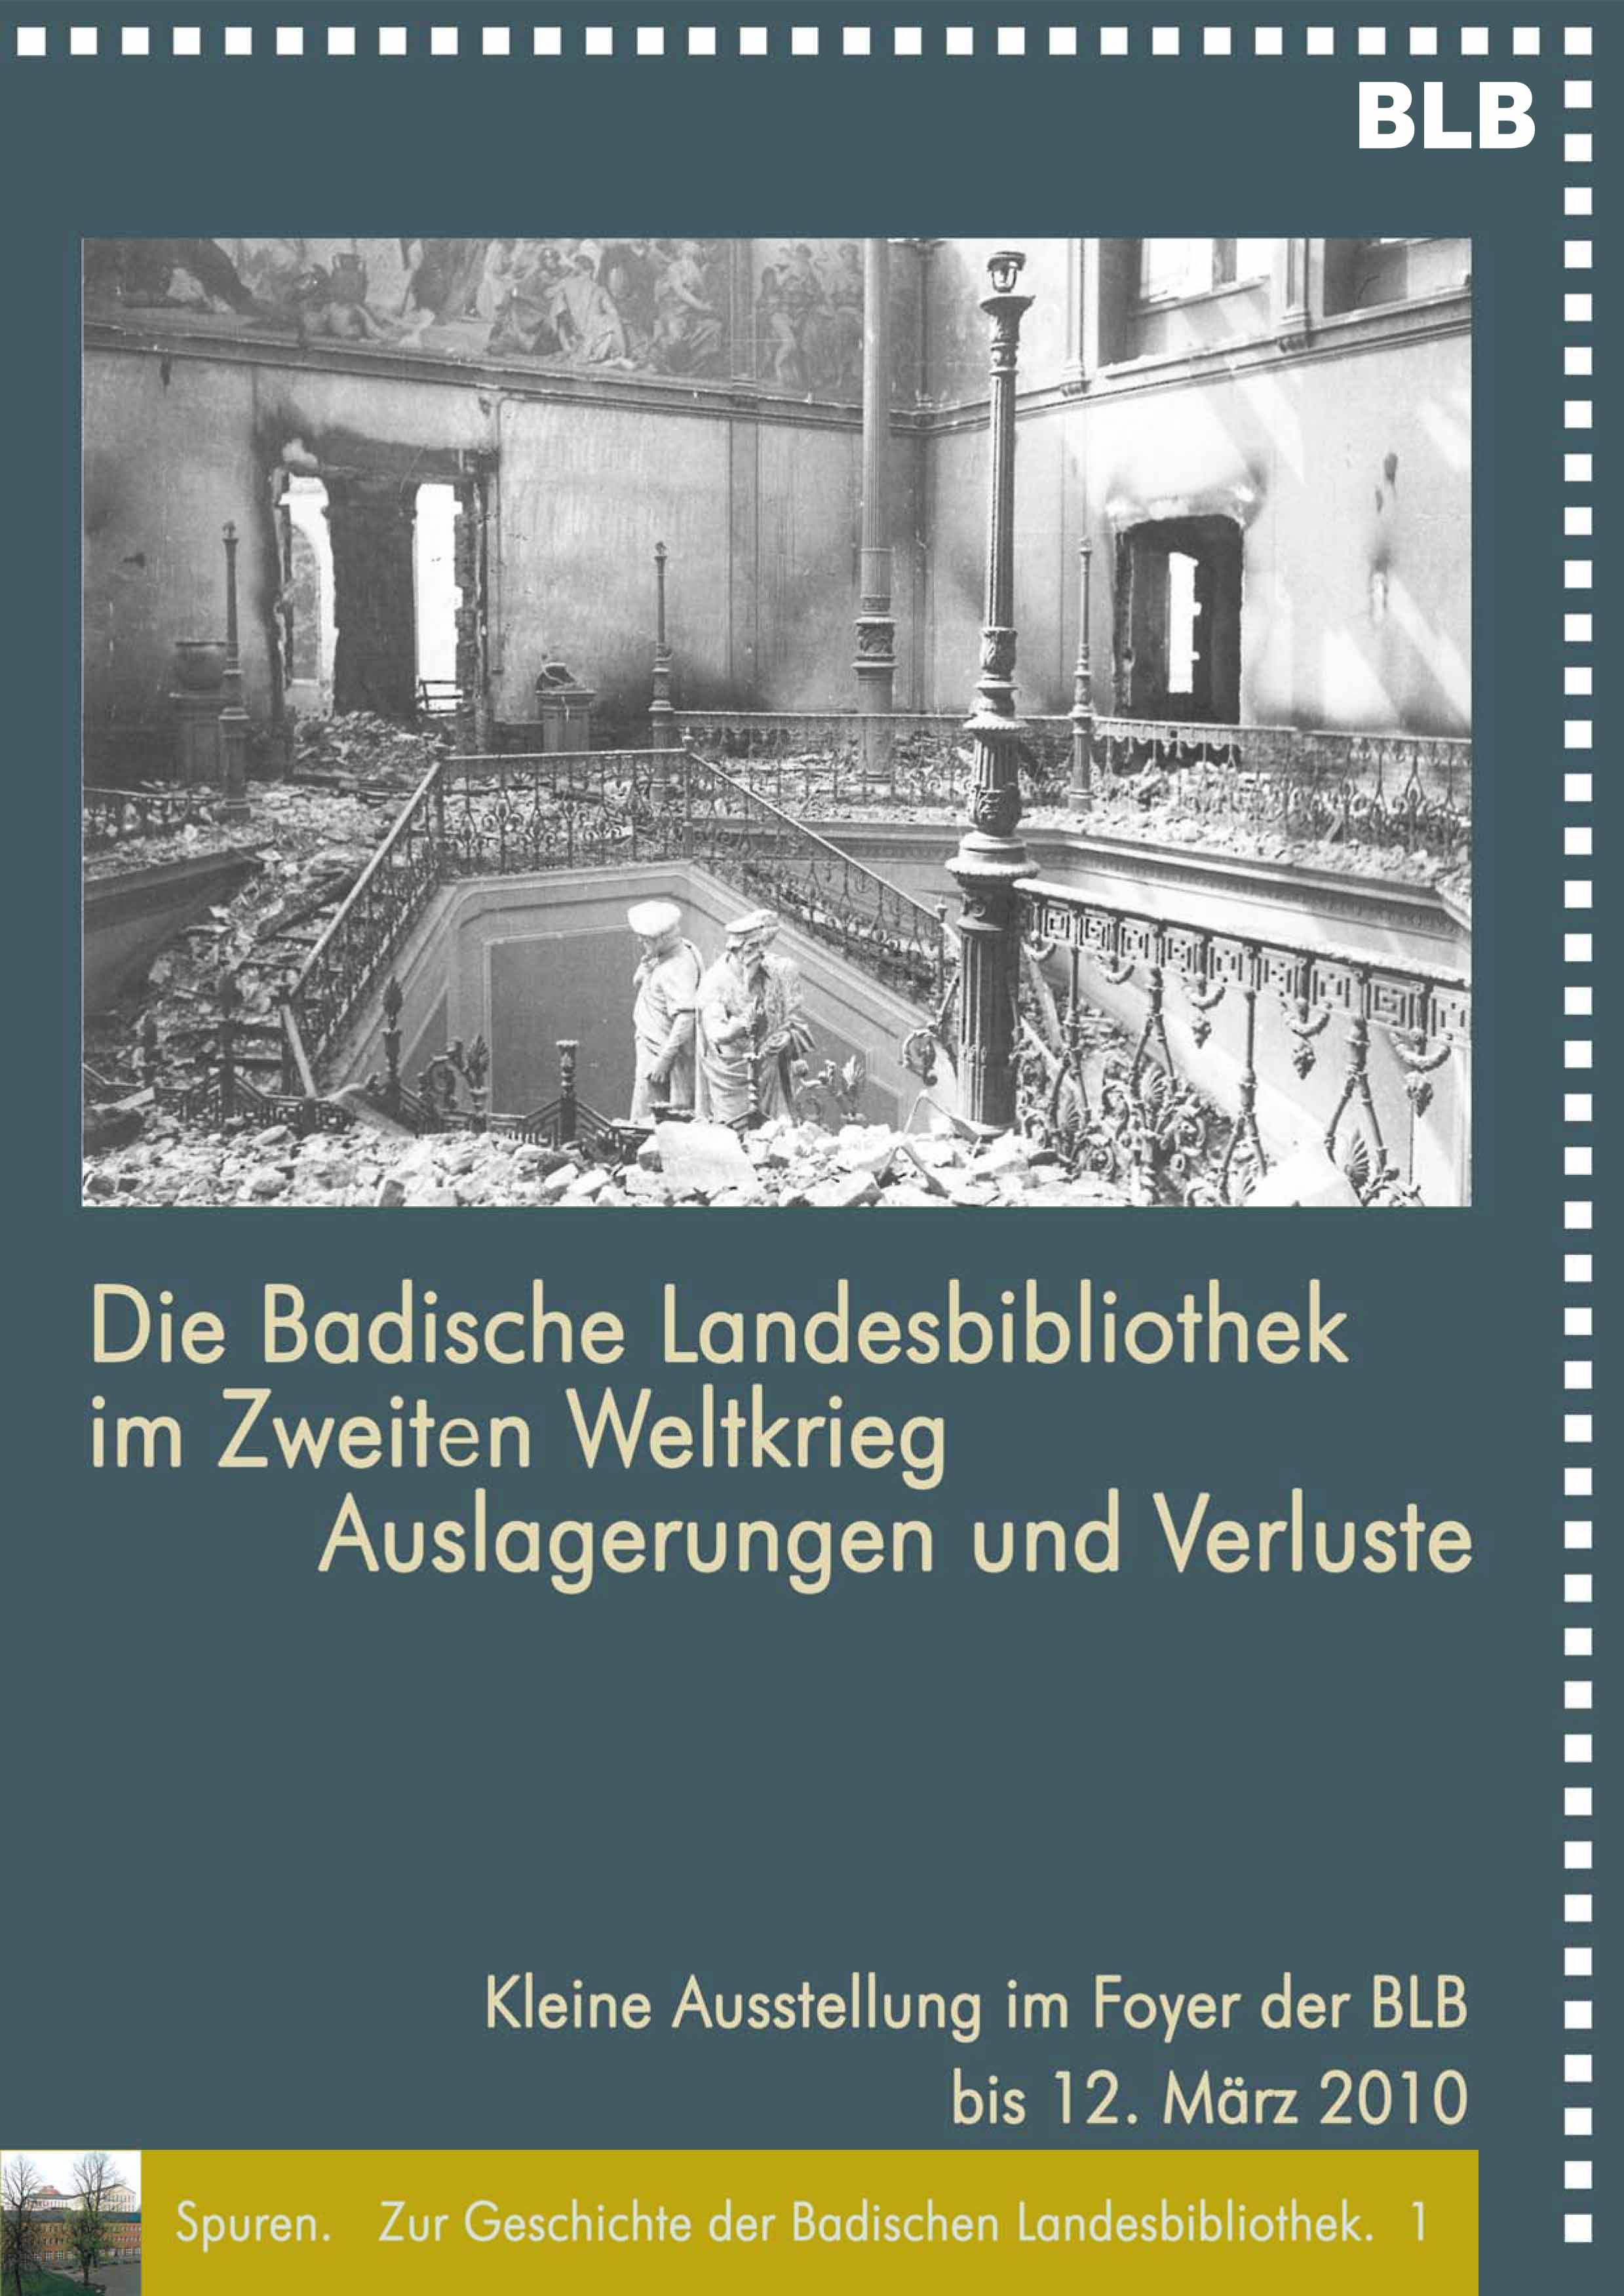 Zu sehen ist die Schwarz-Weiß-Fotografie des ausgebombten Treppenhauses im Naturkundemuseum Karlsruhe. Weiterhin Textinformationen zur Ausstellung. 